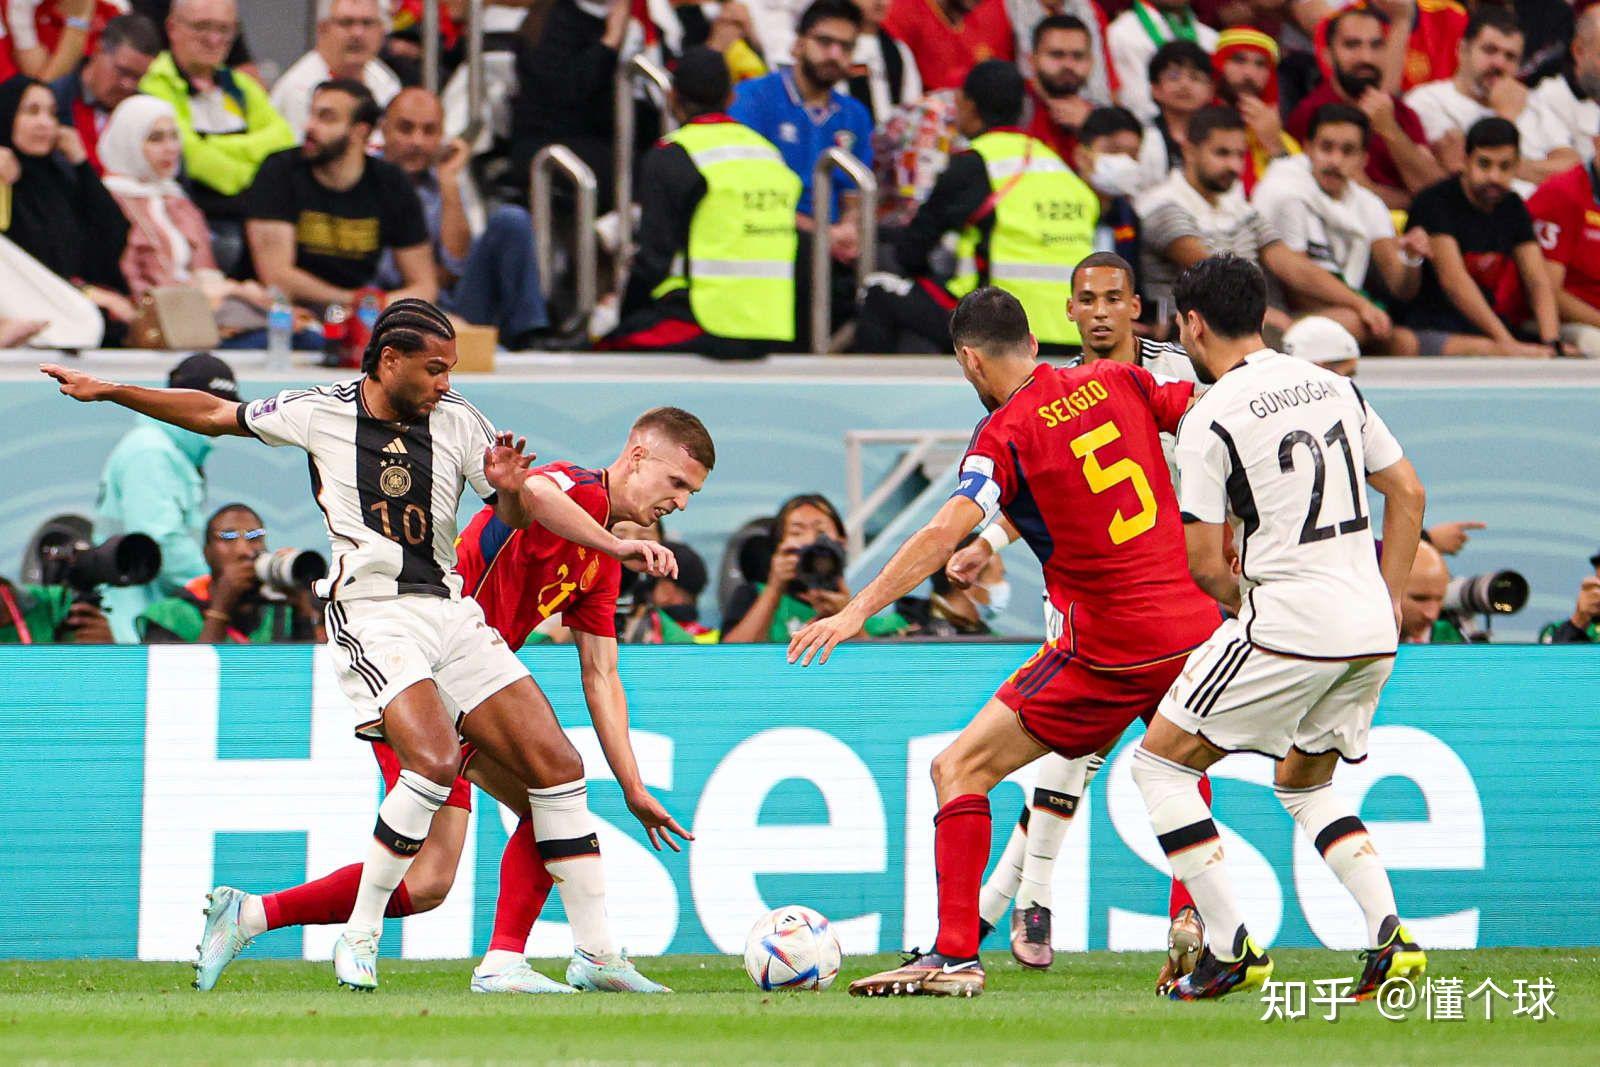 西班牙在卡塔尔世界杯第二场比赛跟德国队1比1战平